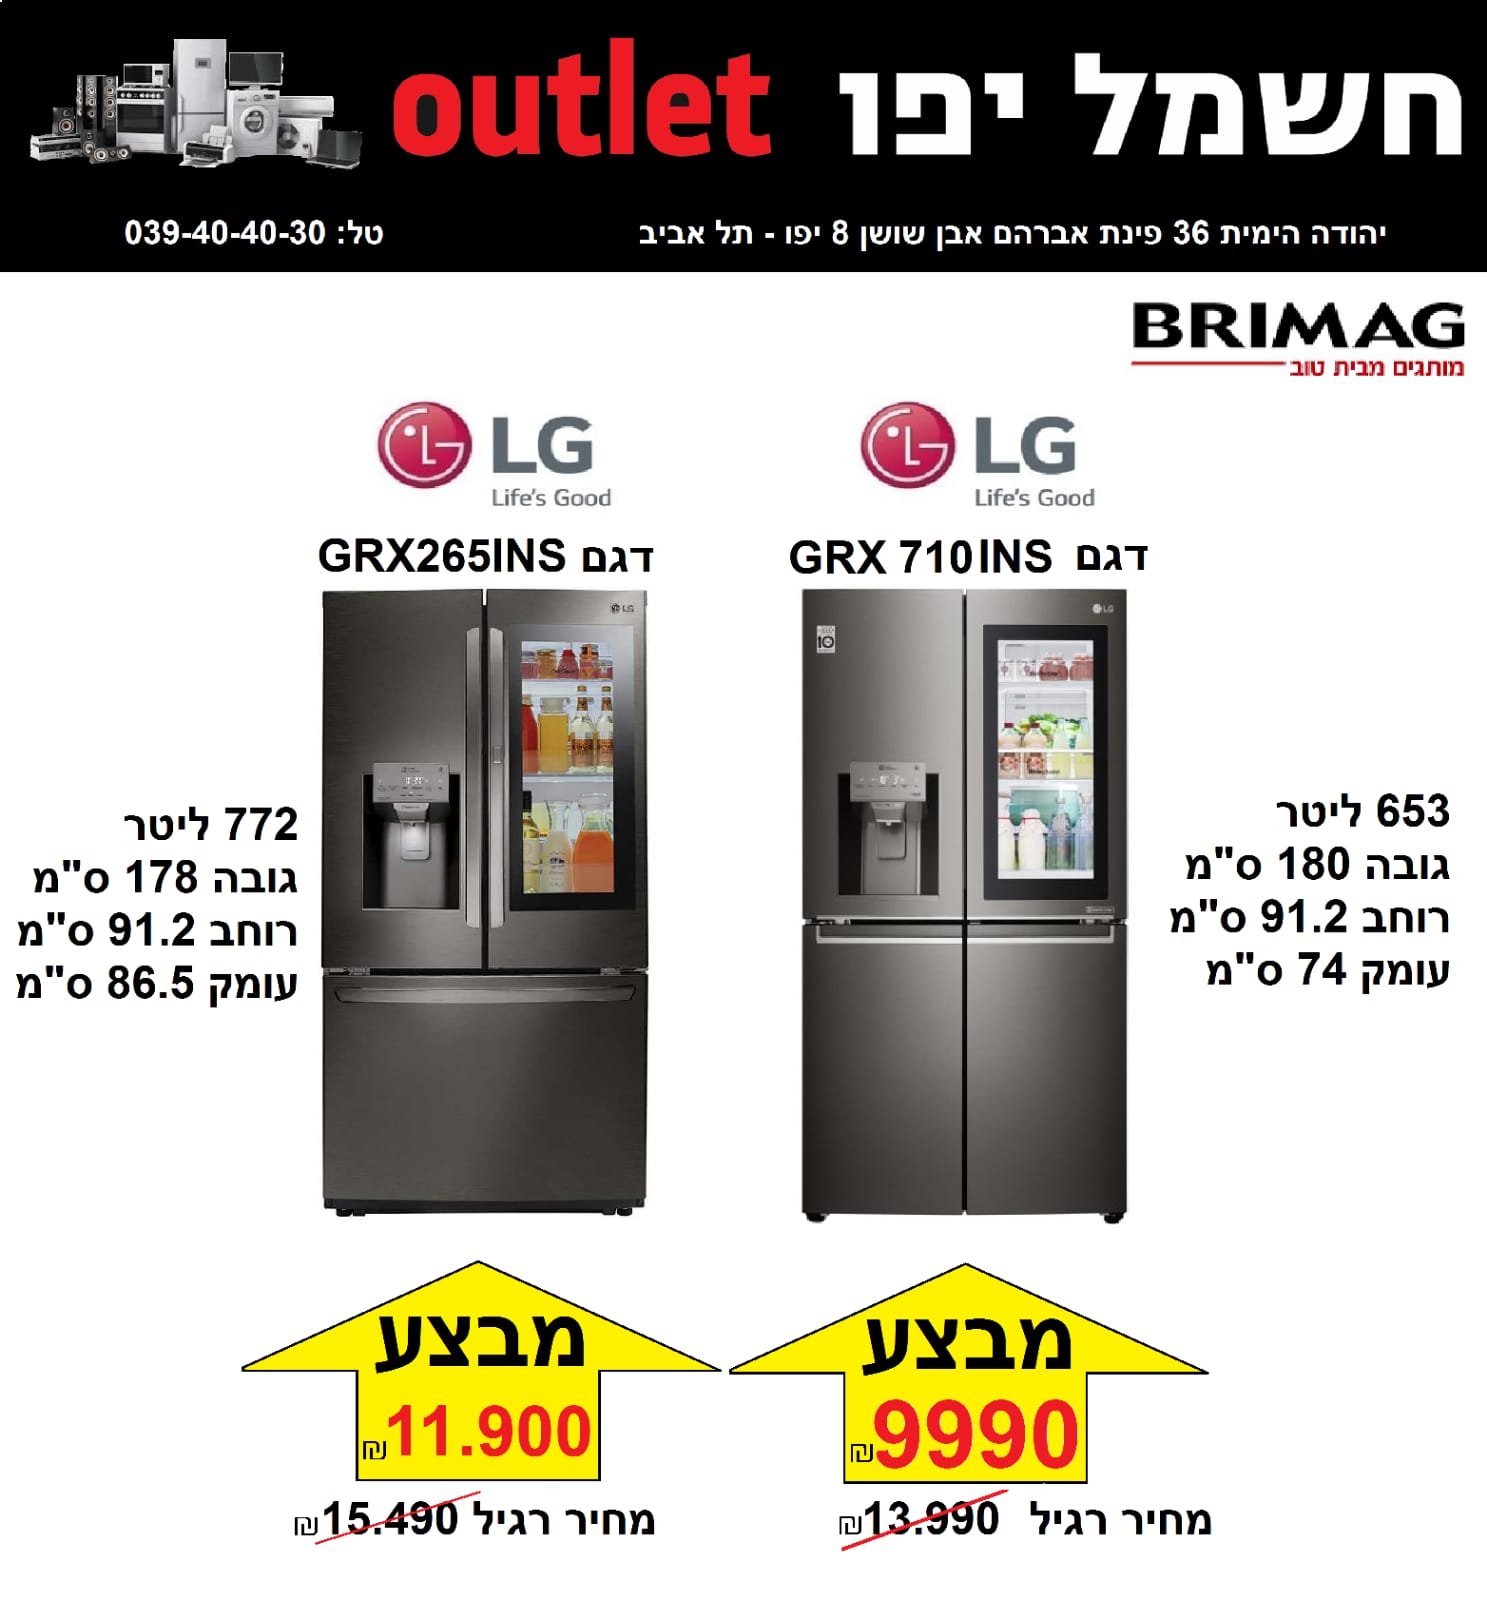  تخفيضات كبيرة على الأسعار في صابة كهرباء يافا OUTLET 